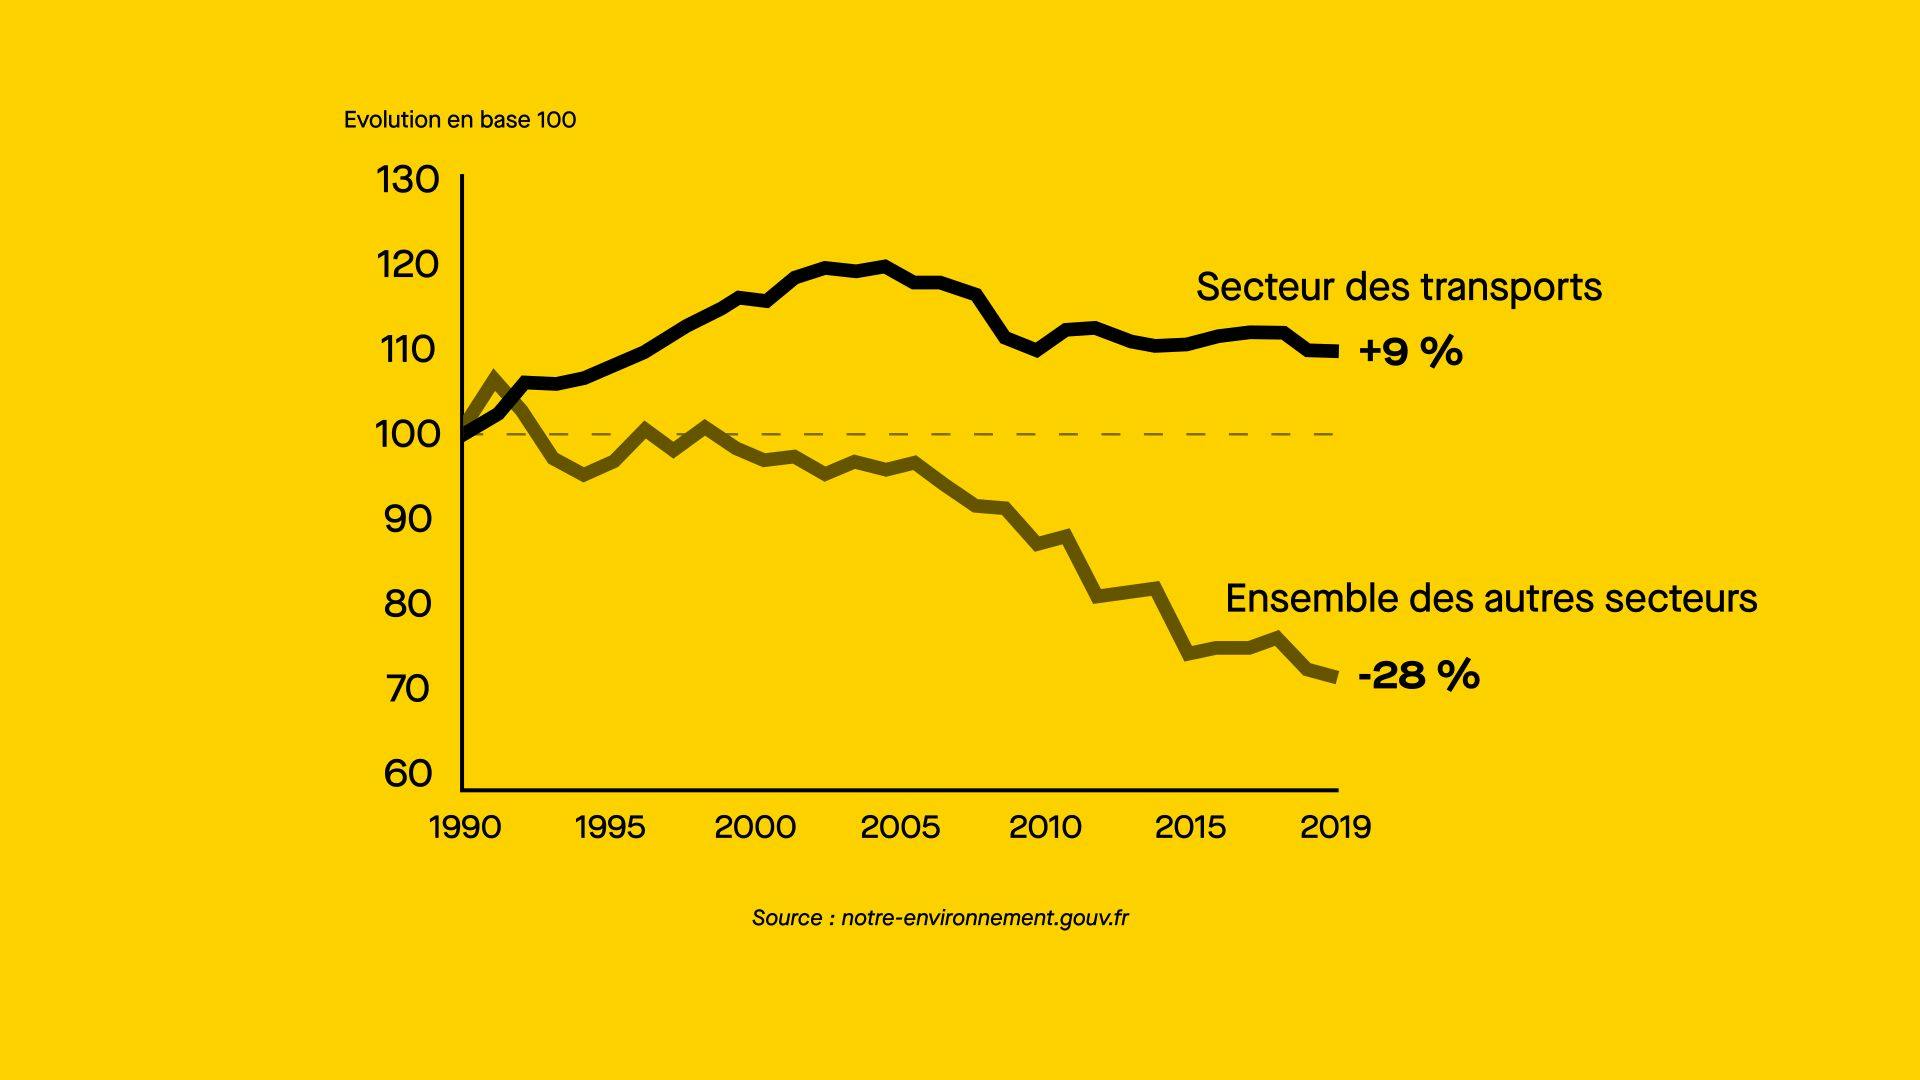 Source : www.notre-environnement.gouv.fr (chiffres : de 1990 à 2019) ©Roole